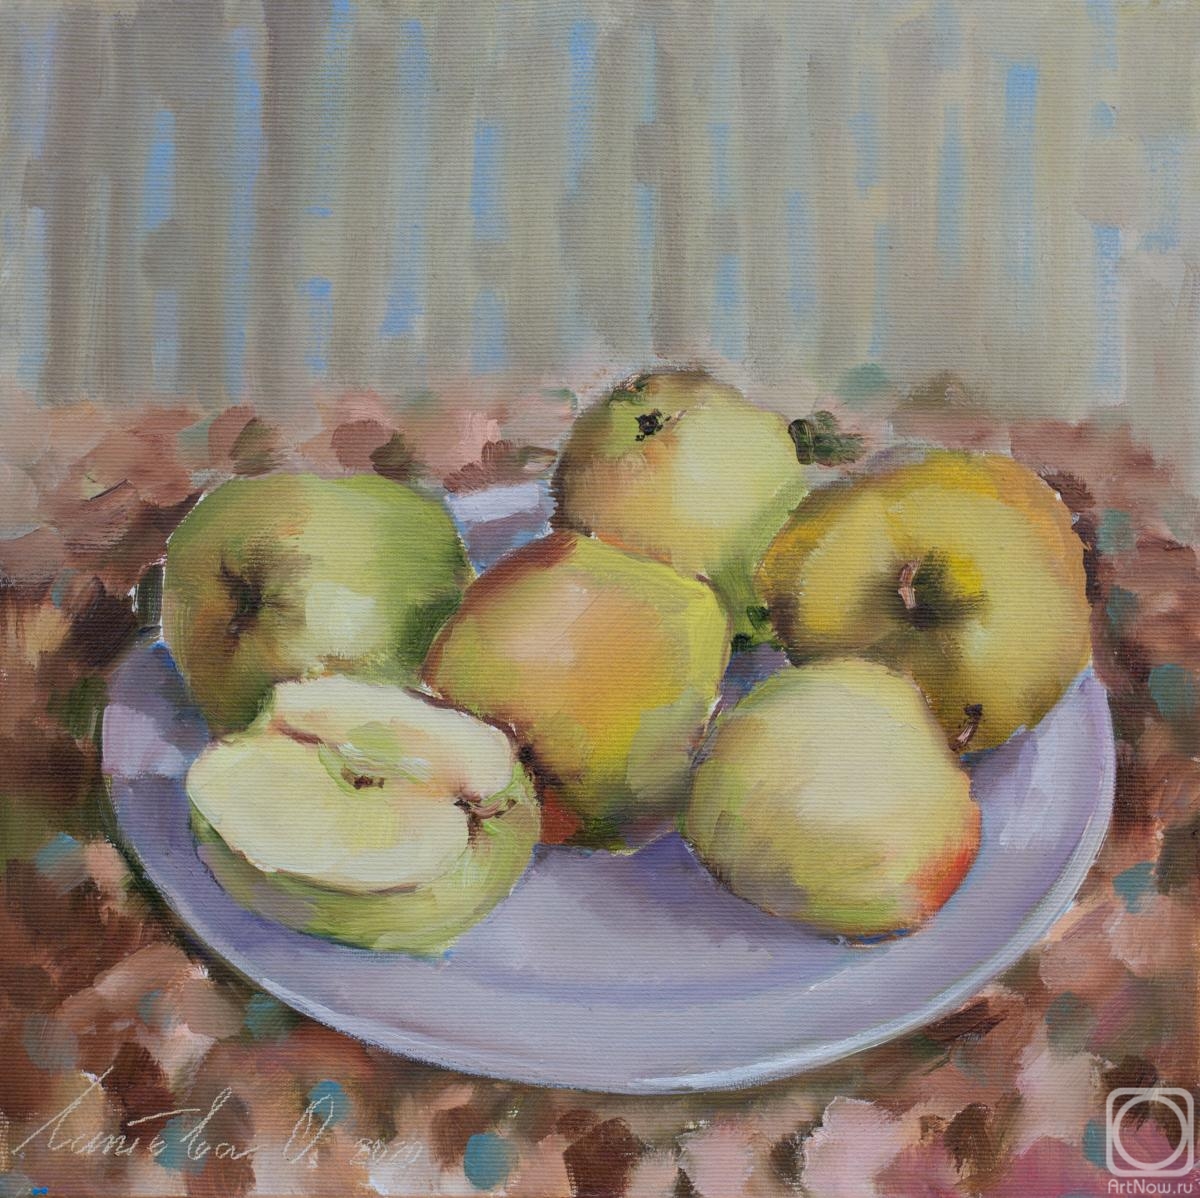 Lapteva Olga. Apples on a plate